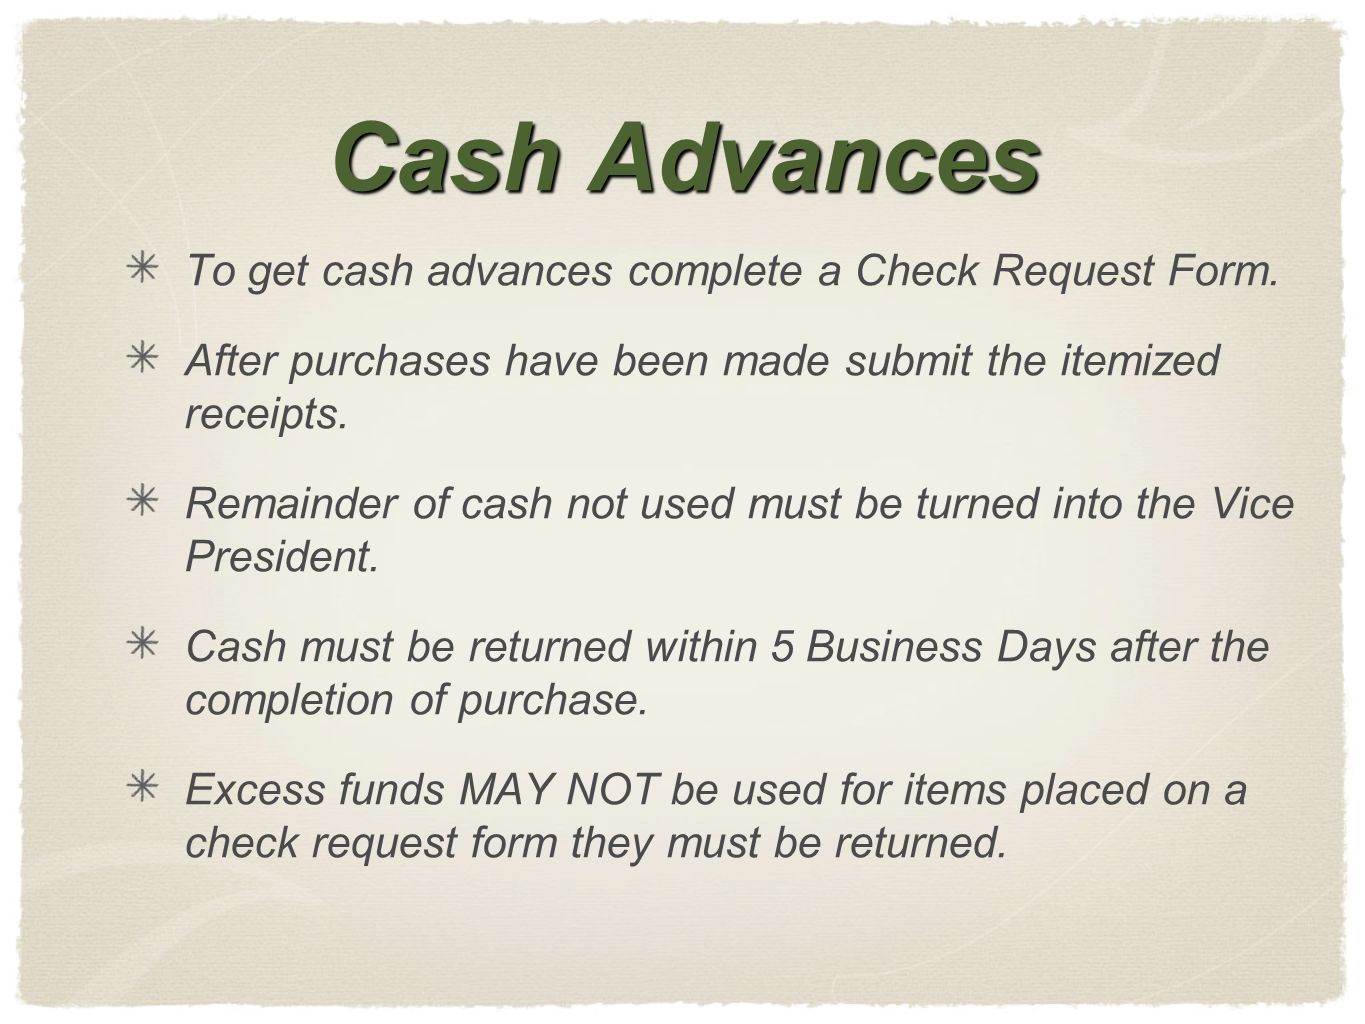 Cash Advances To get cash advances complete a Check Request Form.